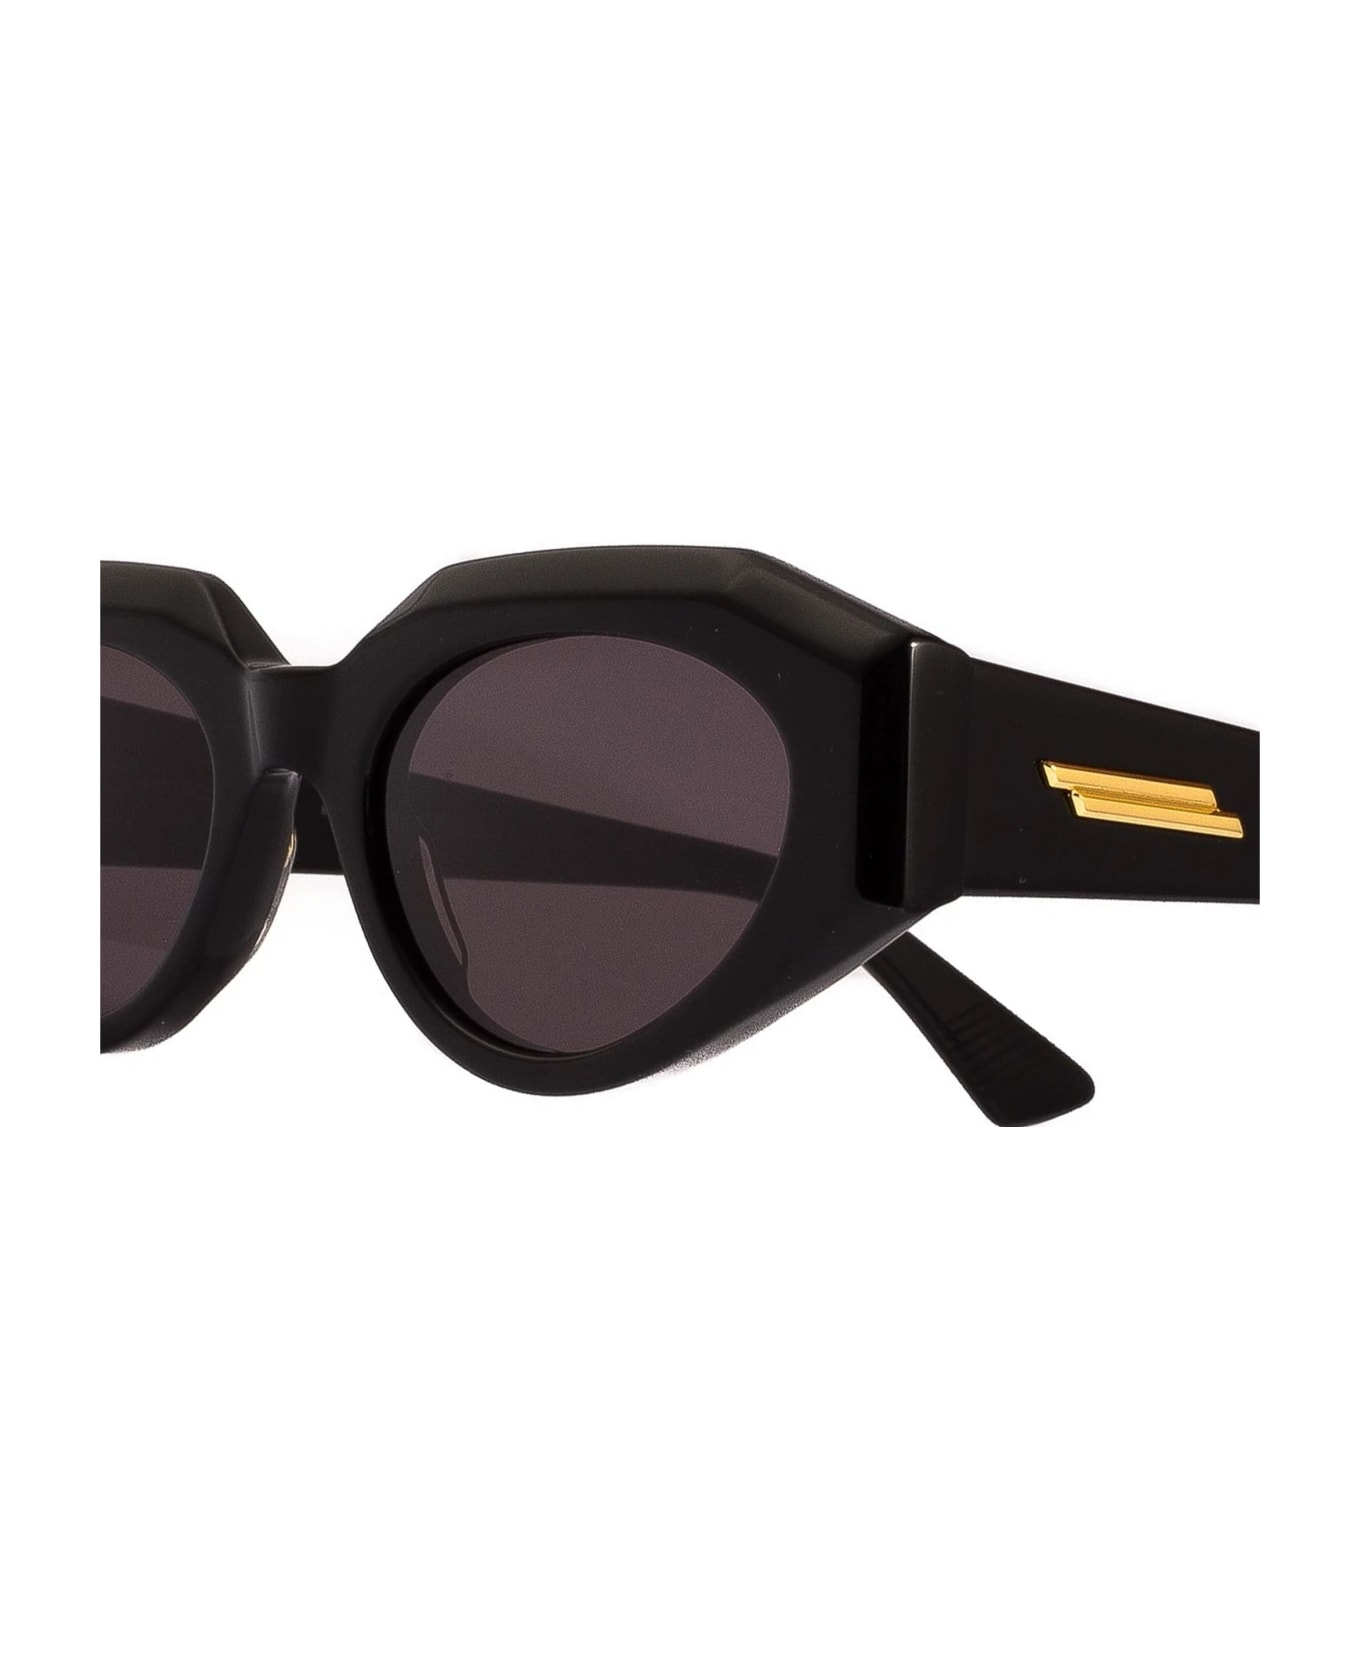 Bottega Veneta Eyewear Bv1031s-001 - Black Sunglasses - Black